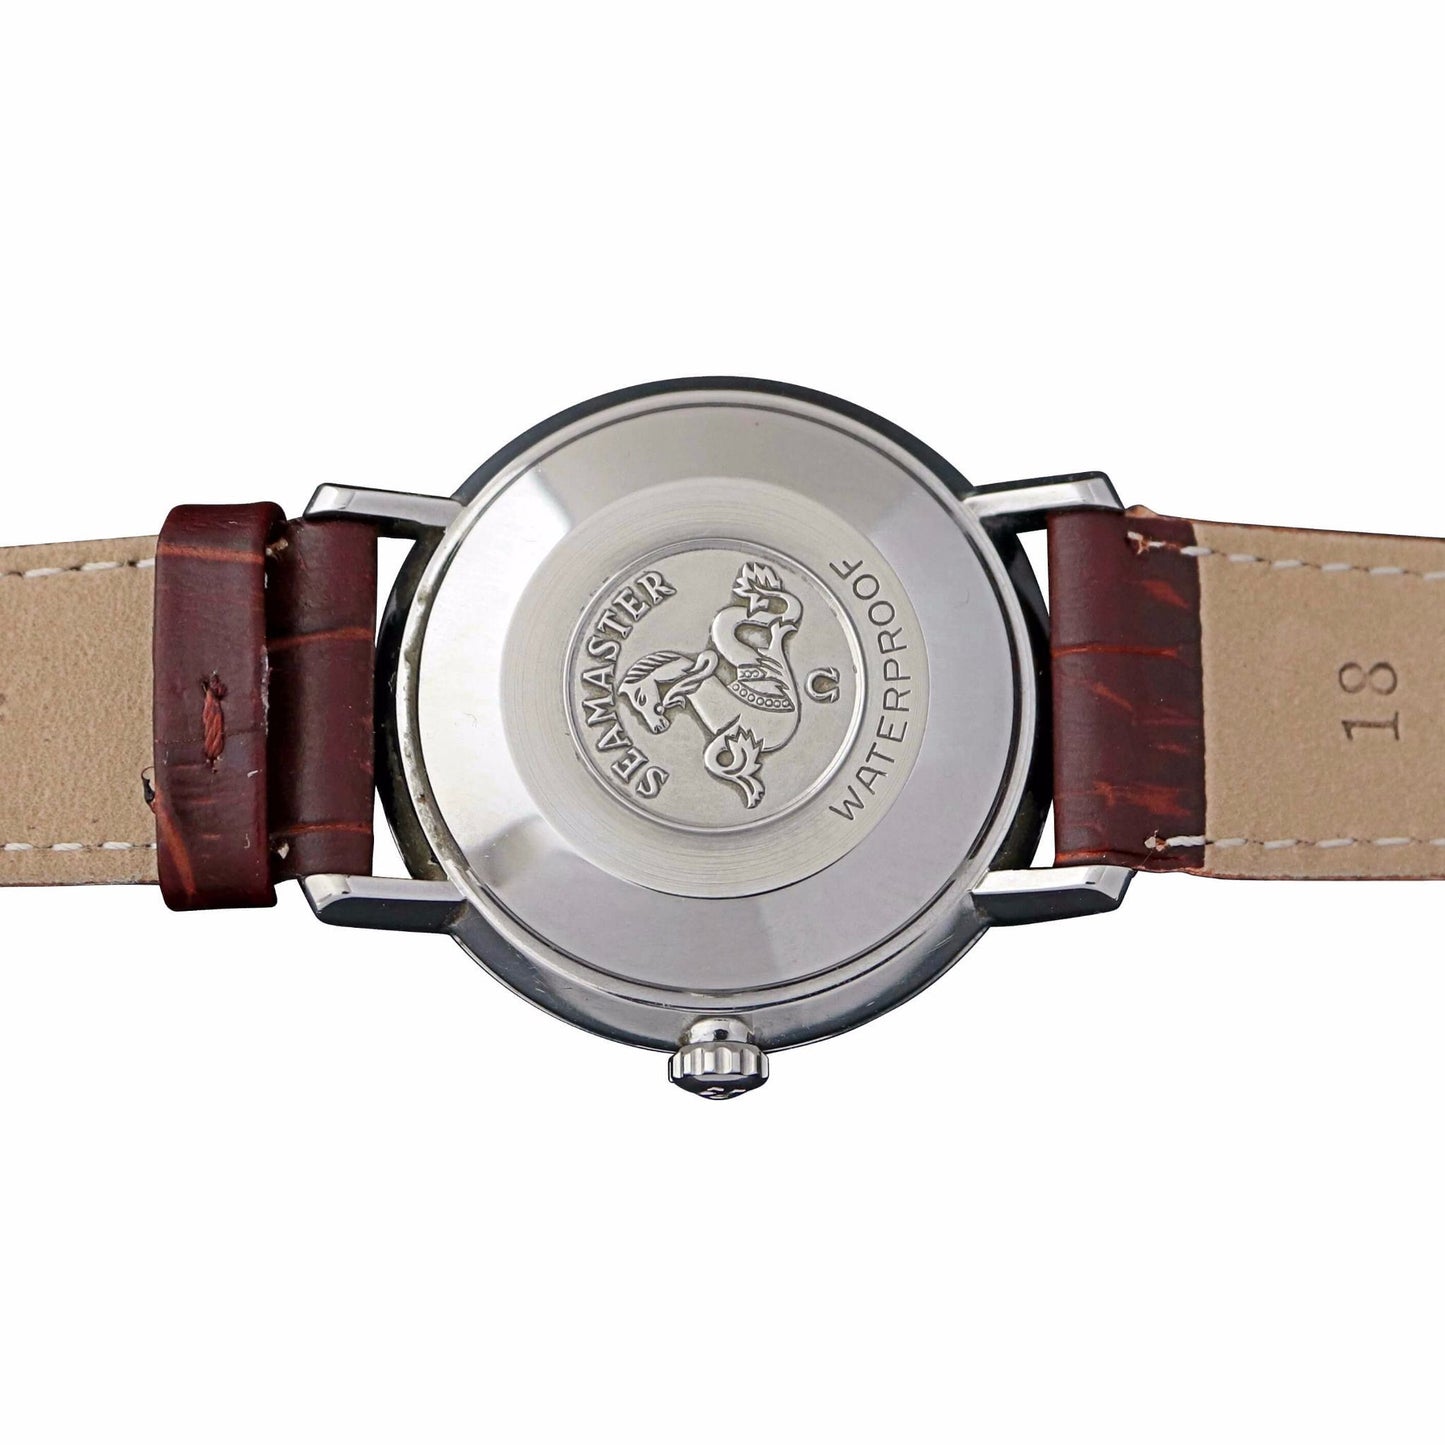 Omega Seamaster De Ville Ref.165.020 Men's Vintage Watch